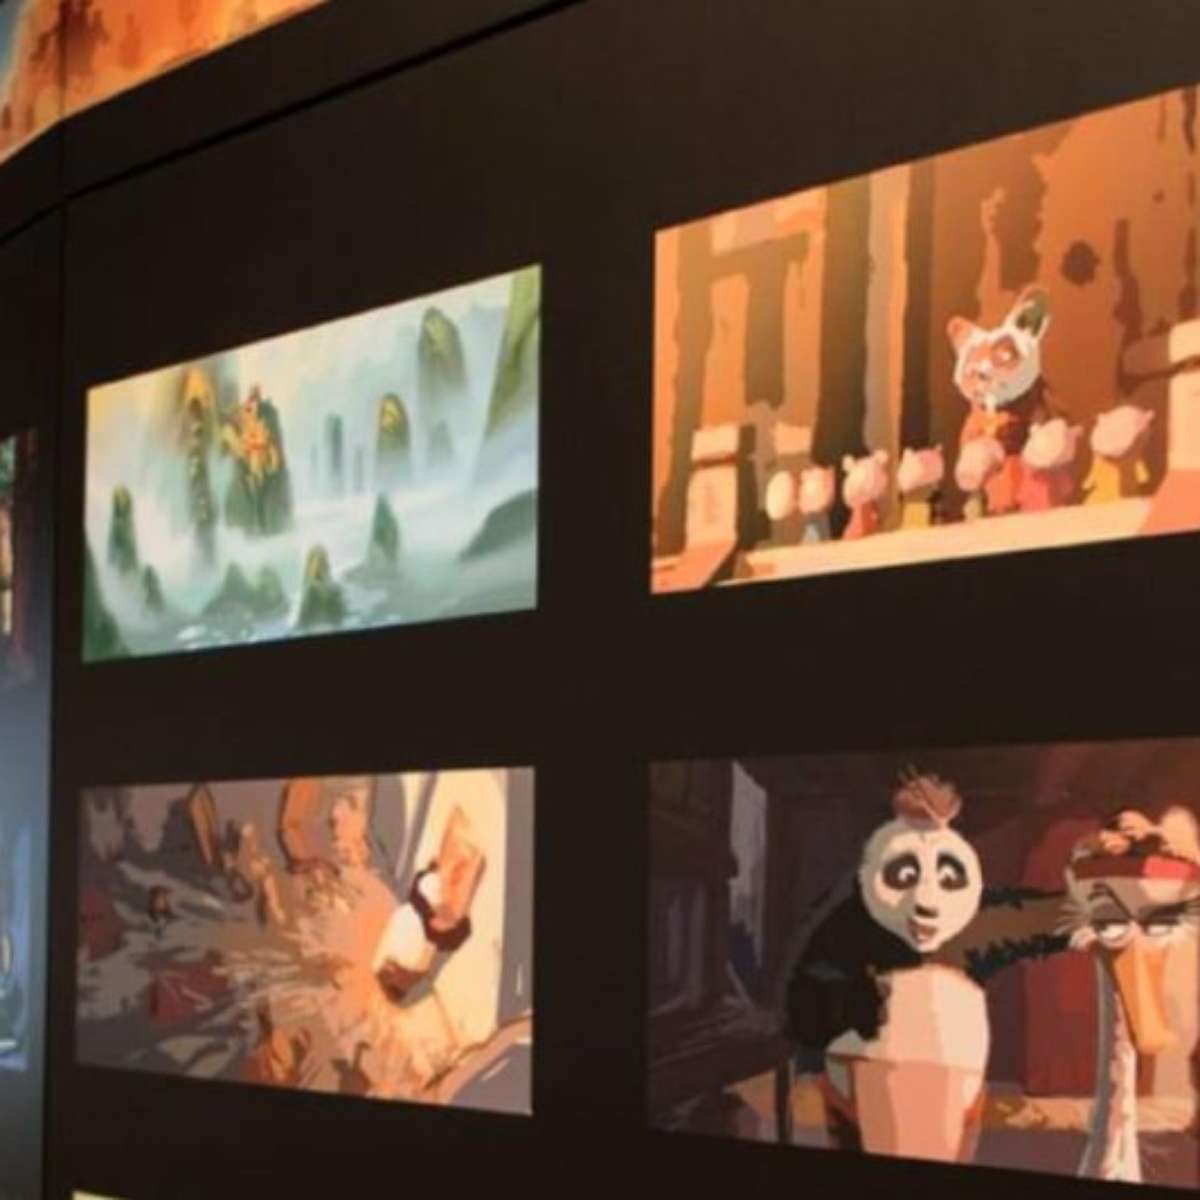 DreamWorks: 25 anos de fantasia